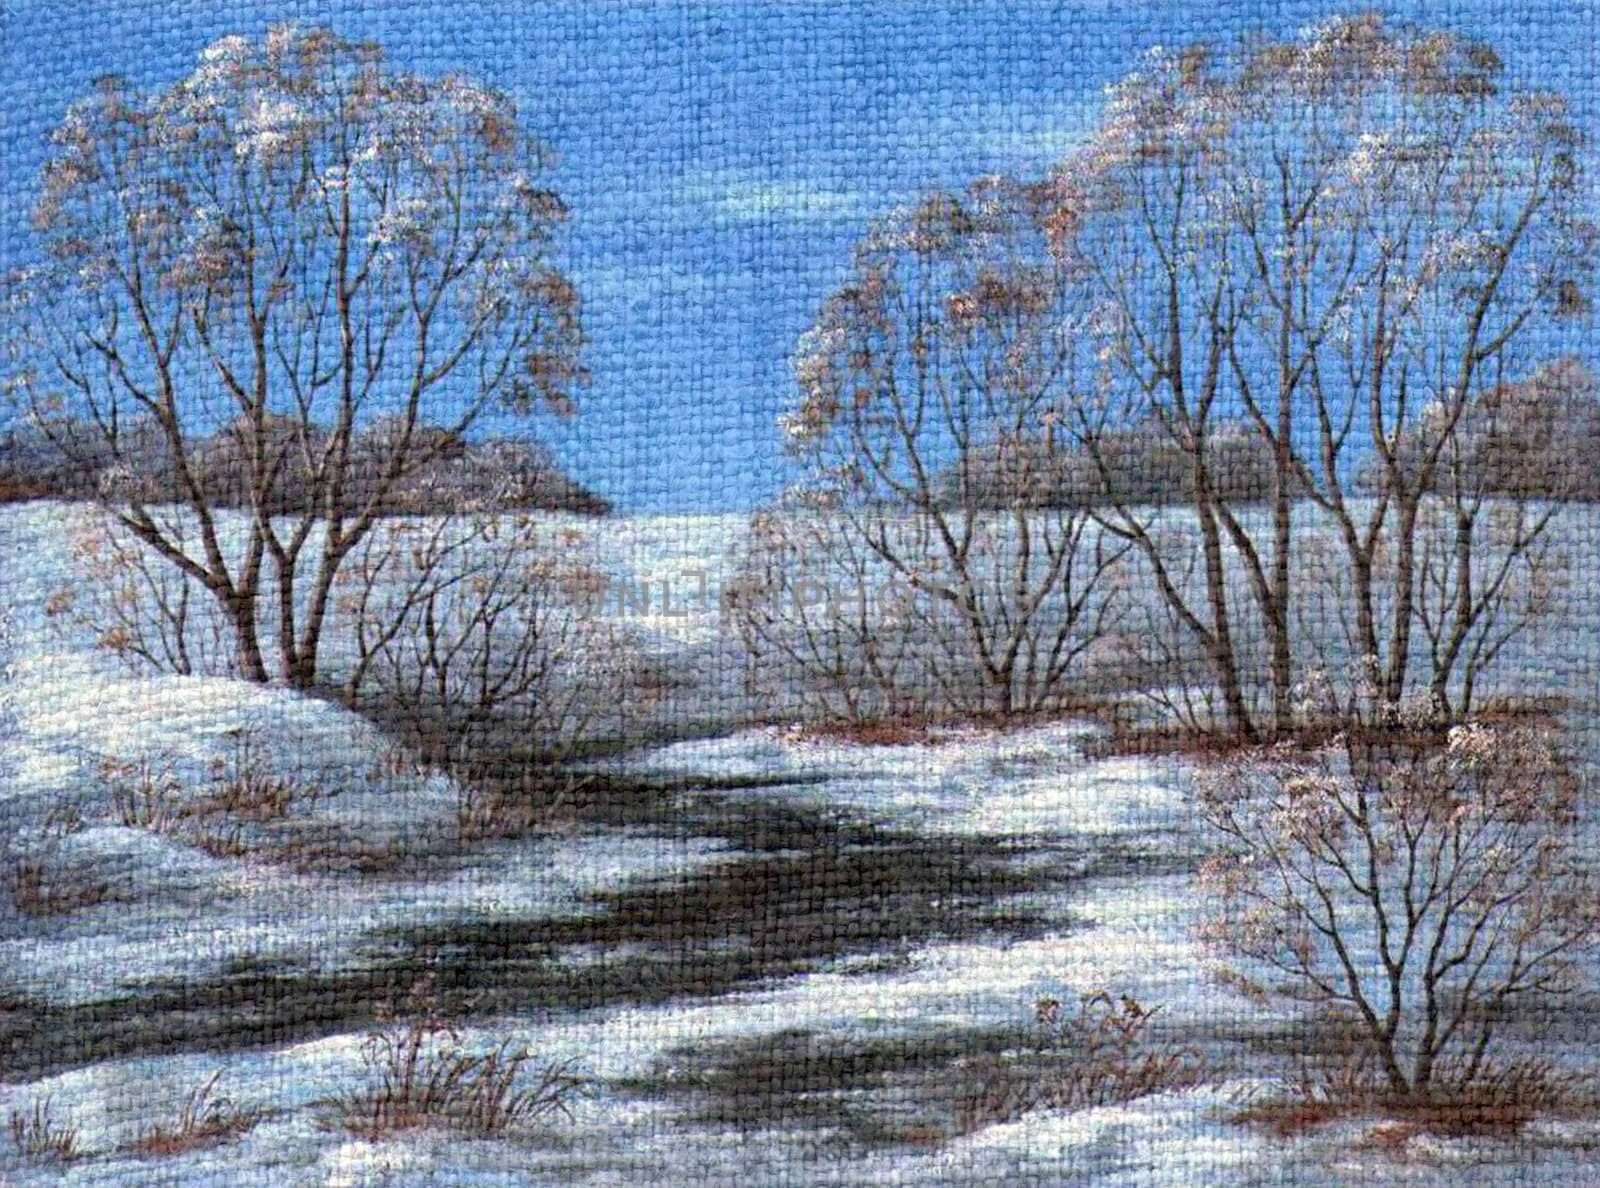 Landscape, winter river by alexcoolok